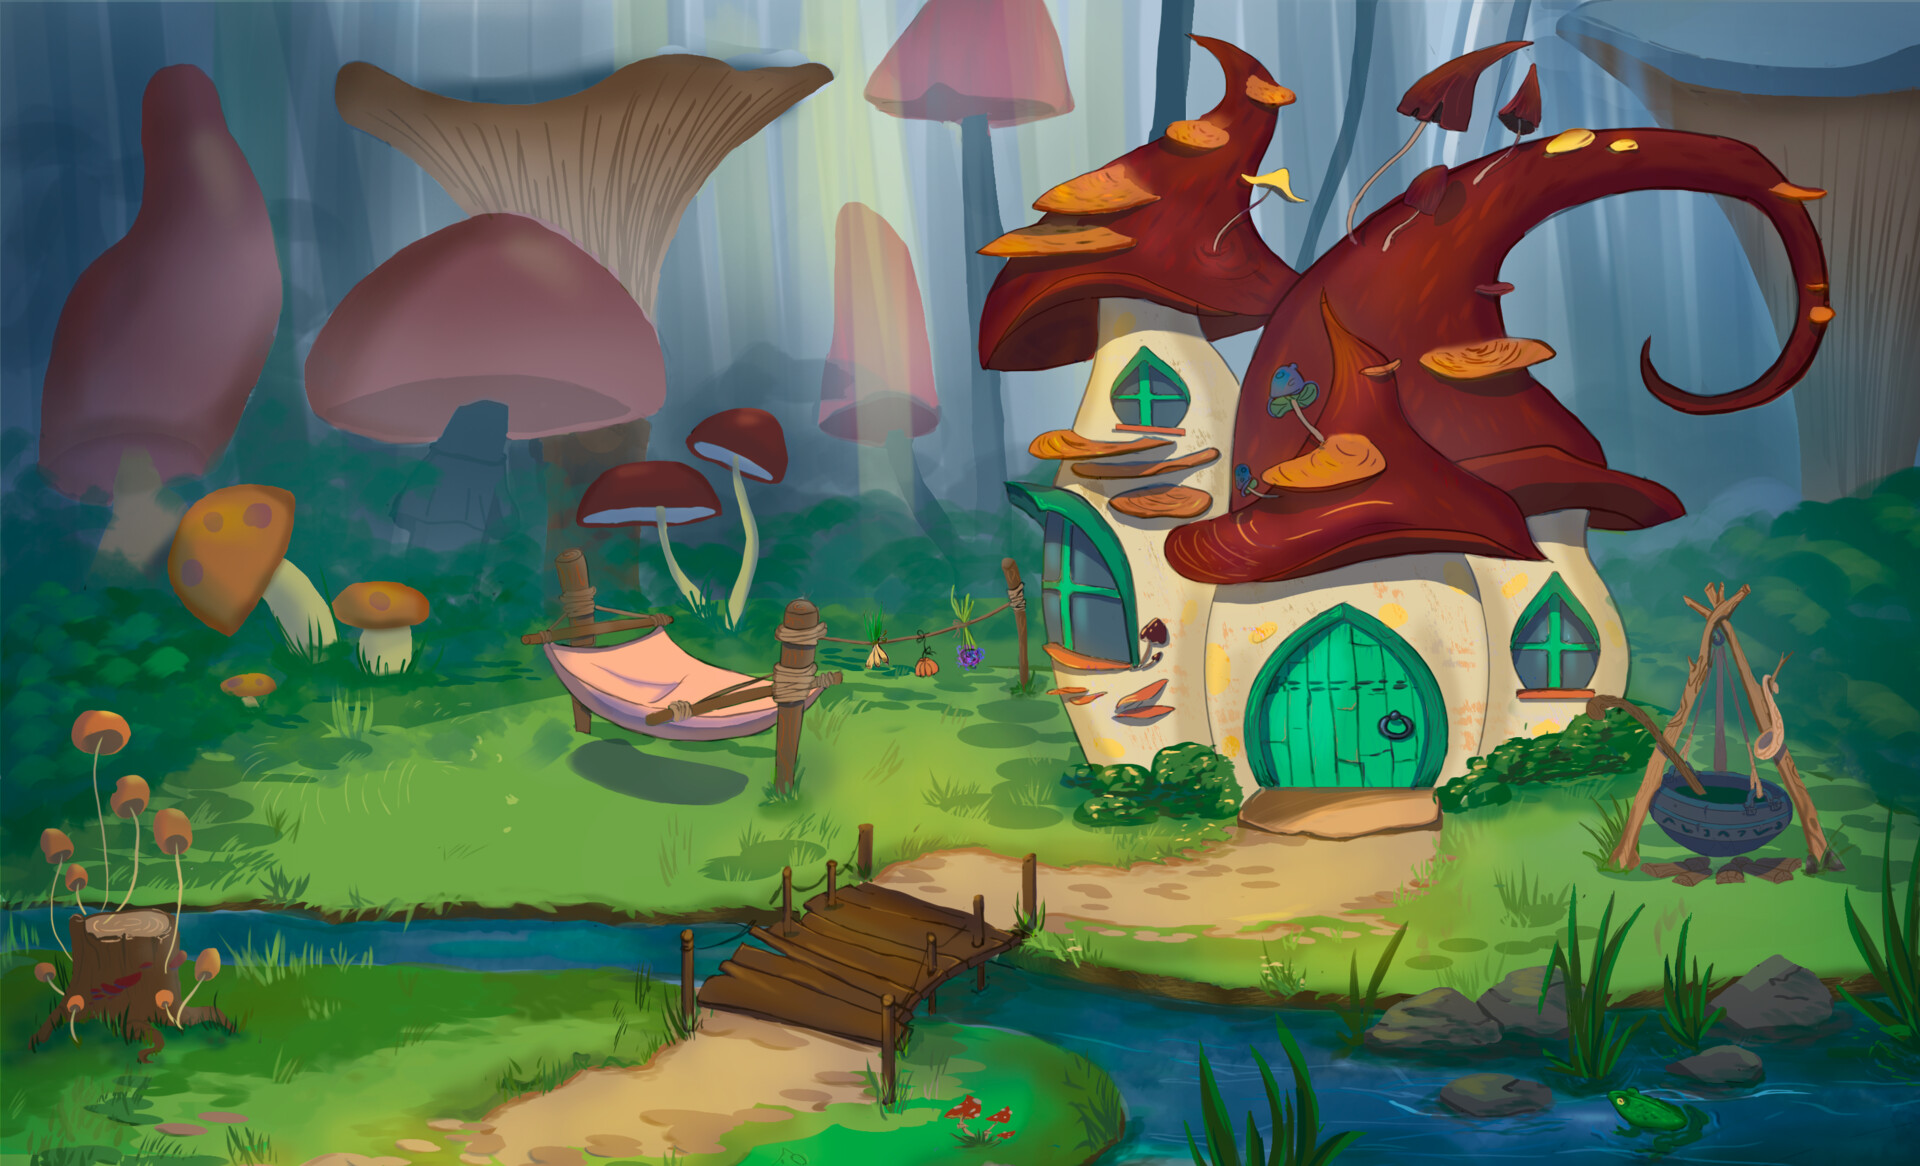 ArtStation - Mushroom house in the forest